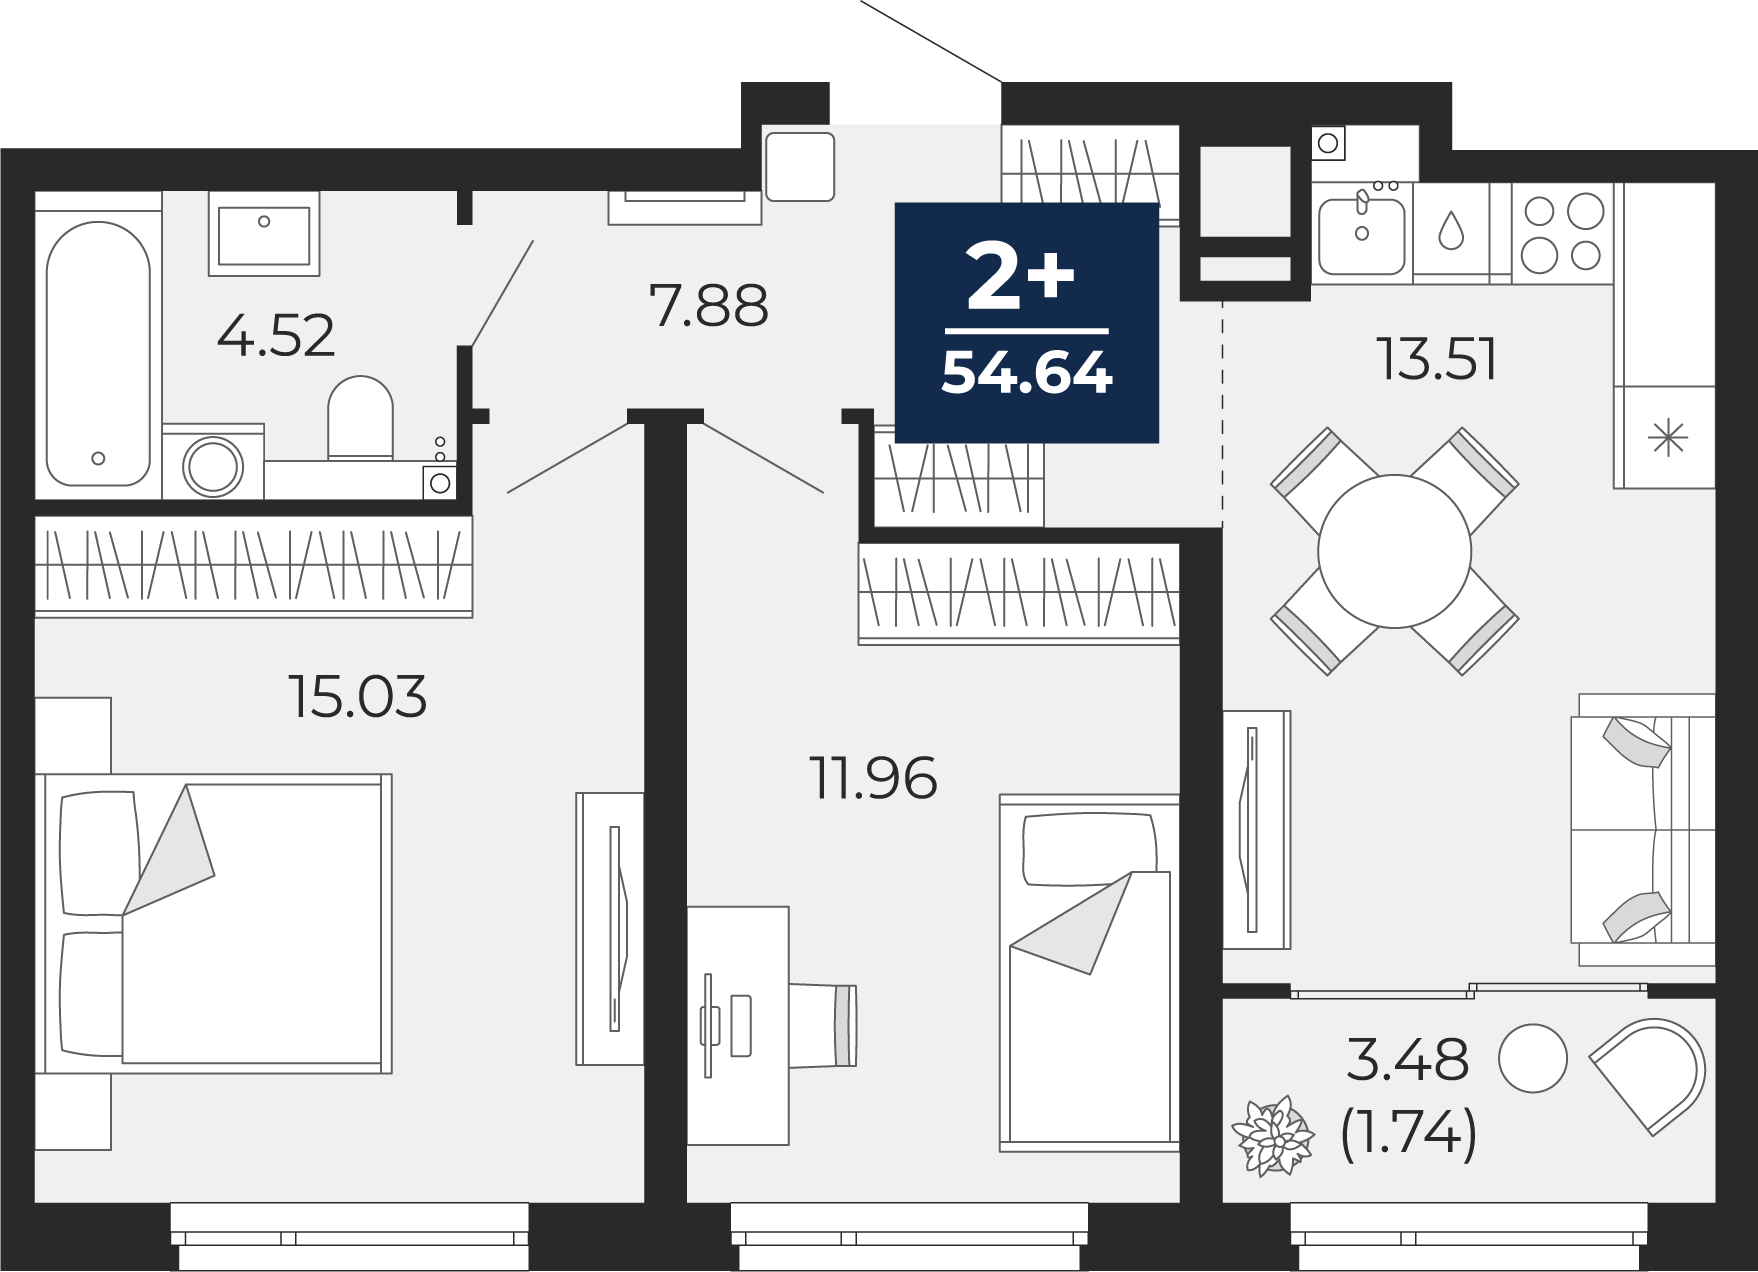 Квартира № 297, 2-комнатная, 54.64 кв. м, 19 этаж